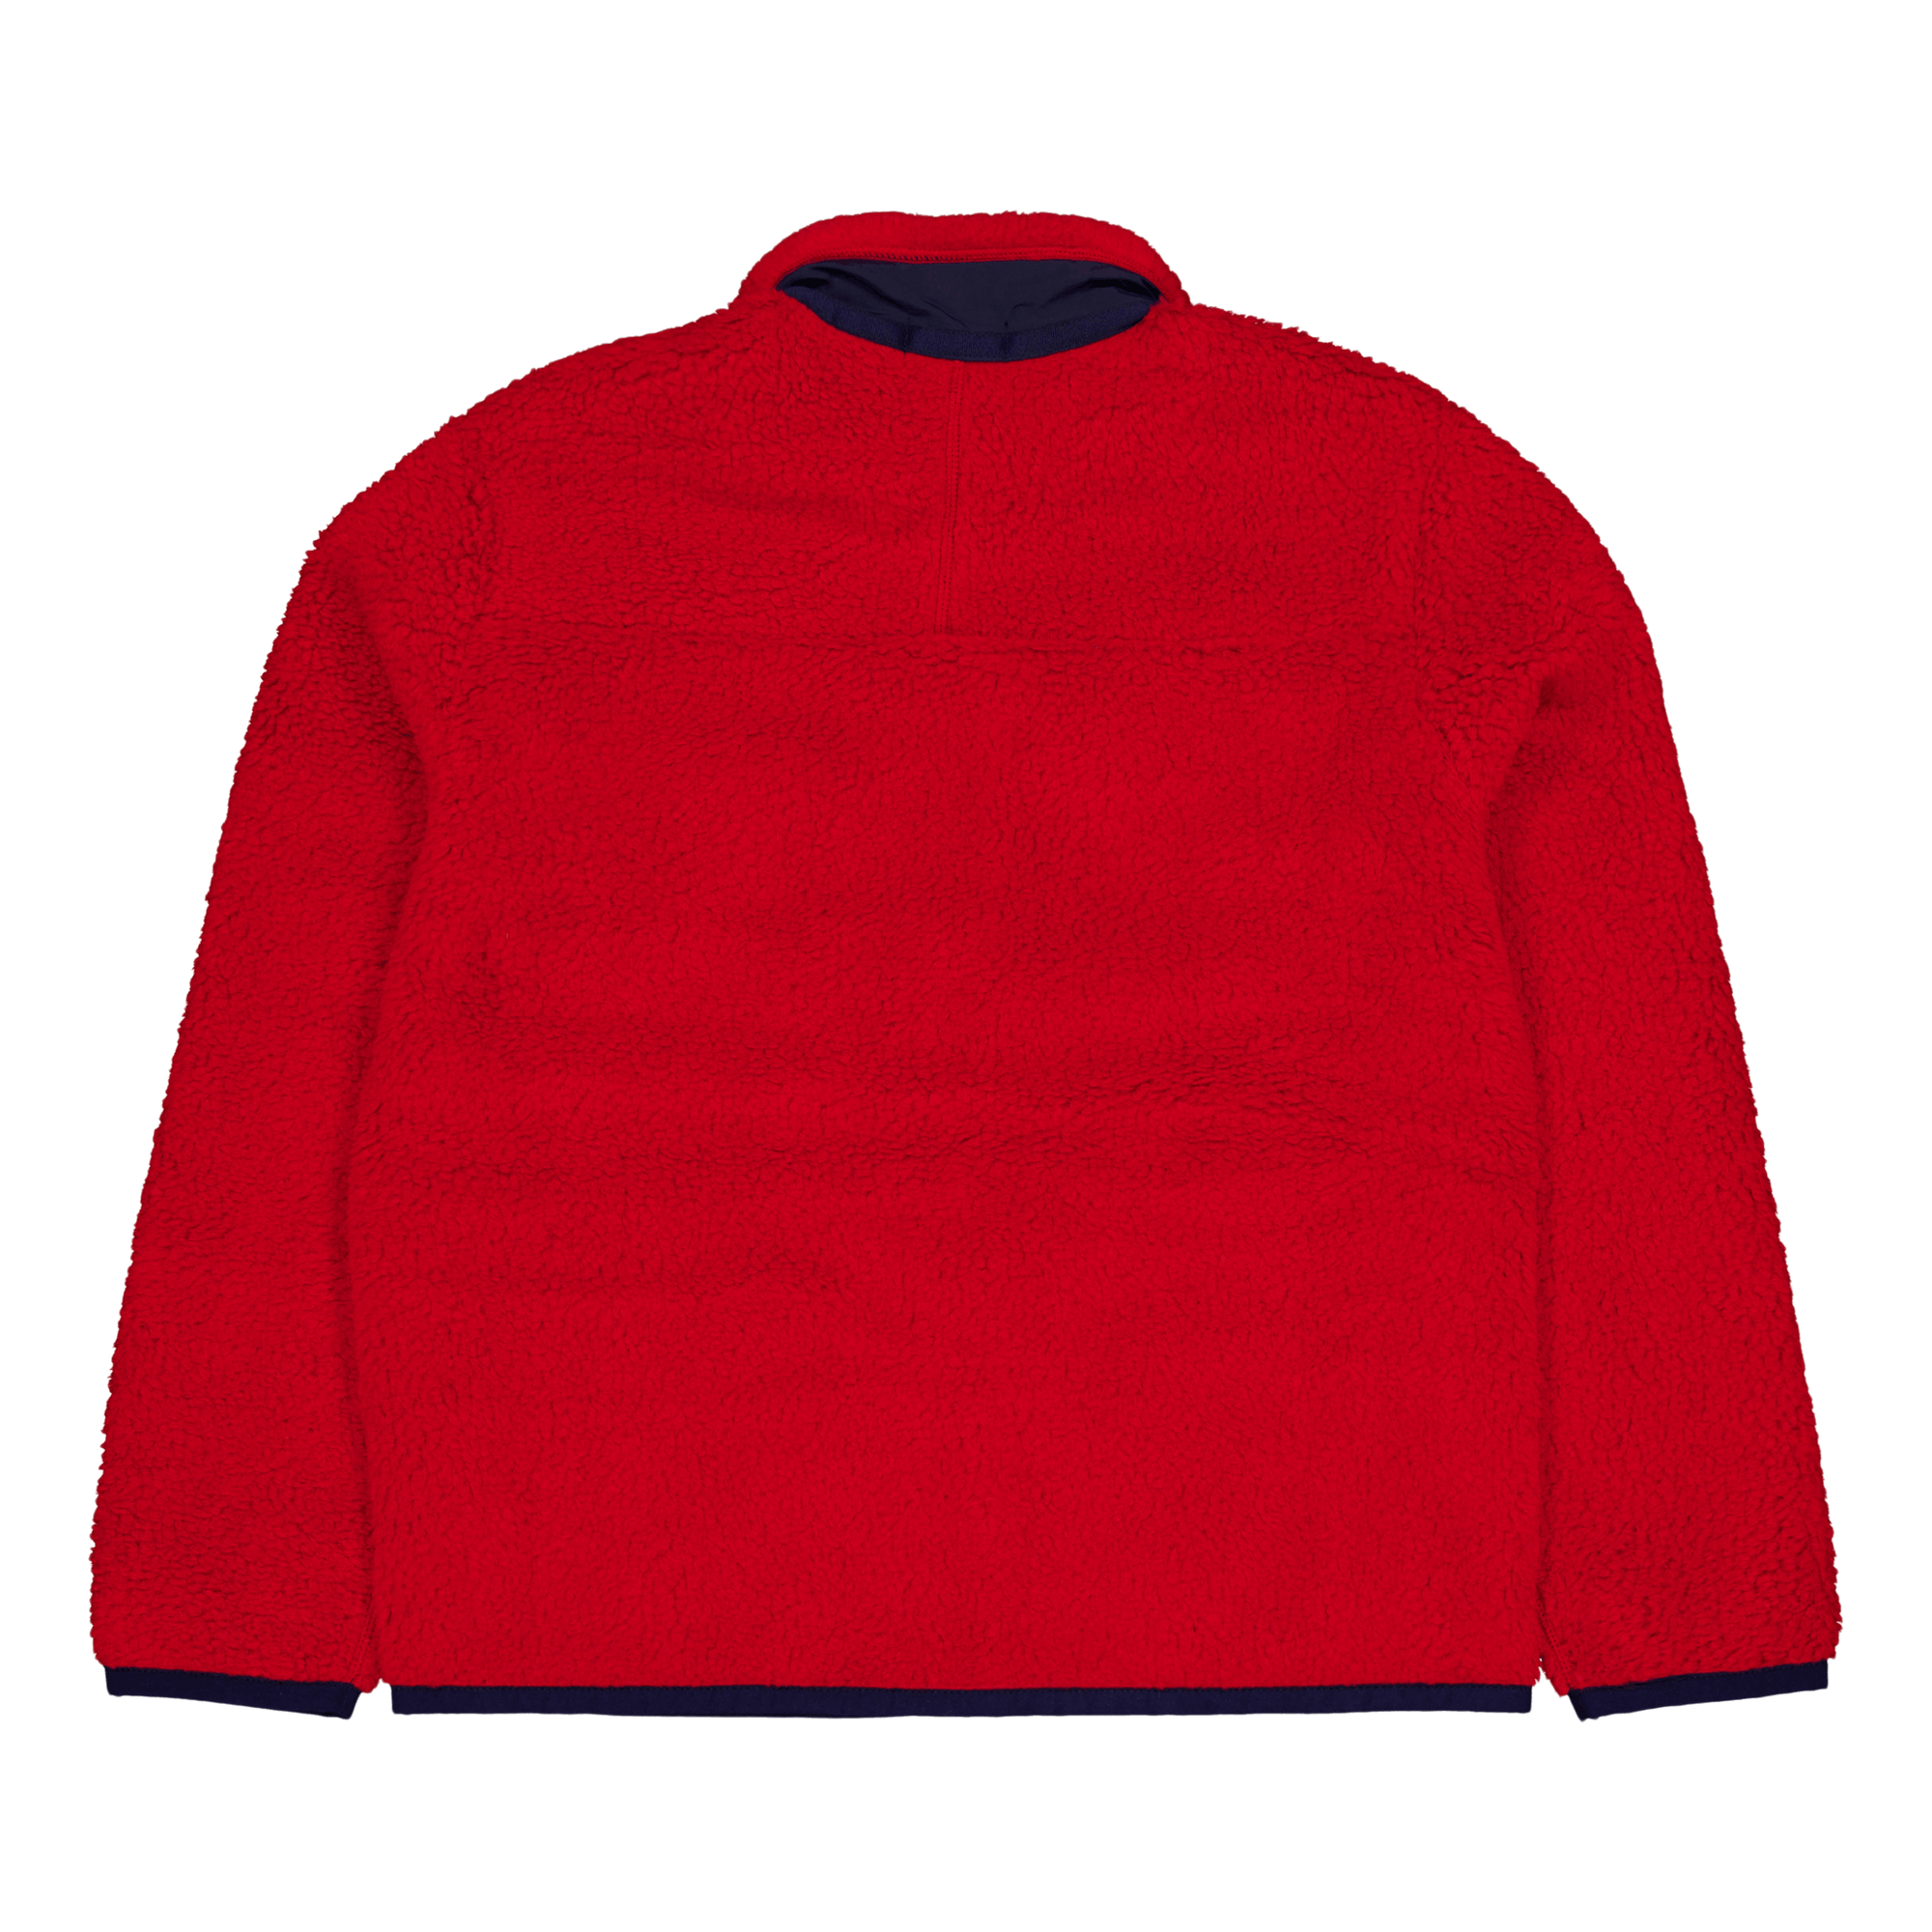 Pile Fleece Jacket Rl 2000 Red